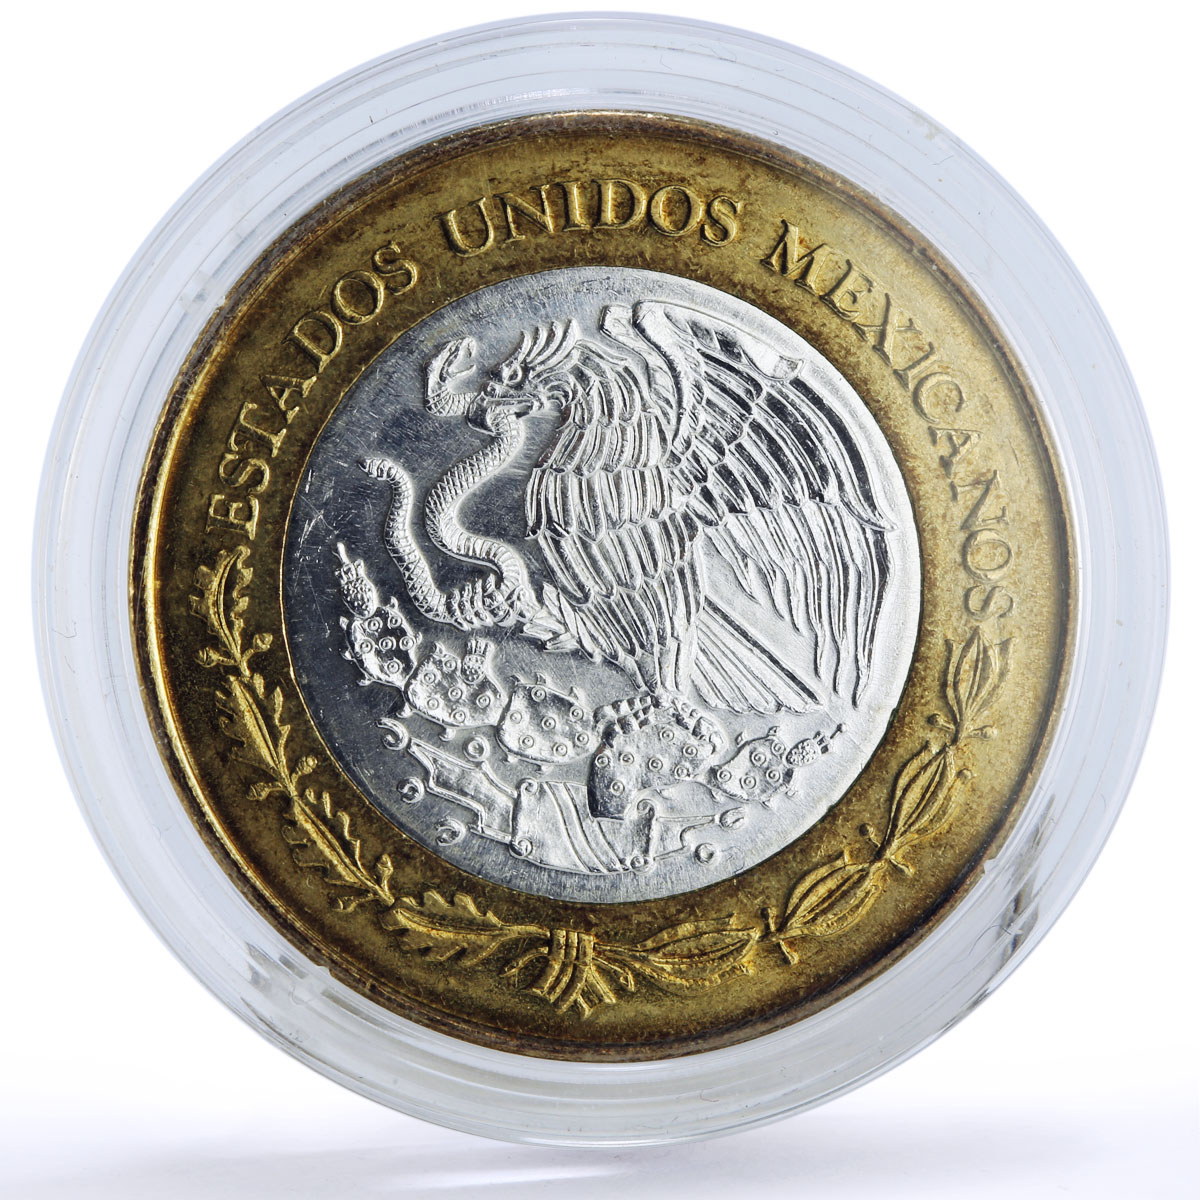 Mexico 100 pesos Revolutionary Benito Juarez Garcia Politics bimetal coin 2006